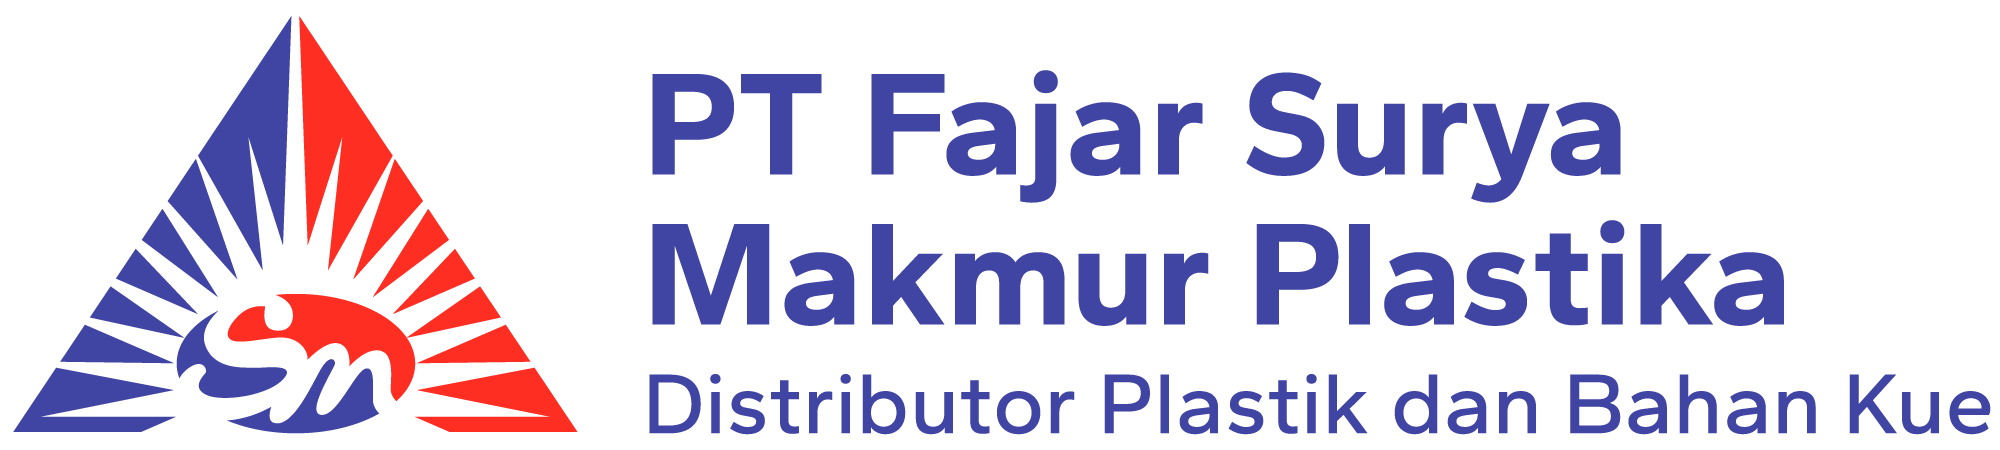 PT Fajar Surya Makmur Plastika Logo